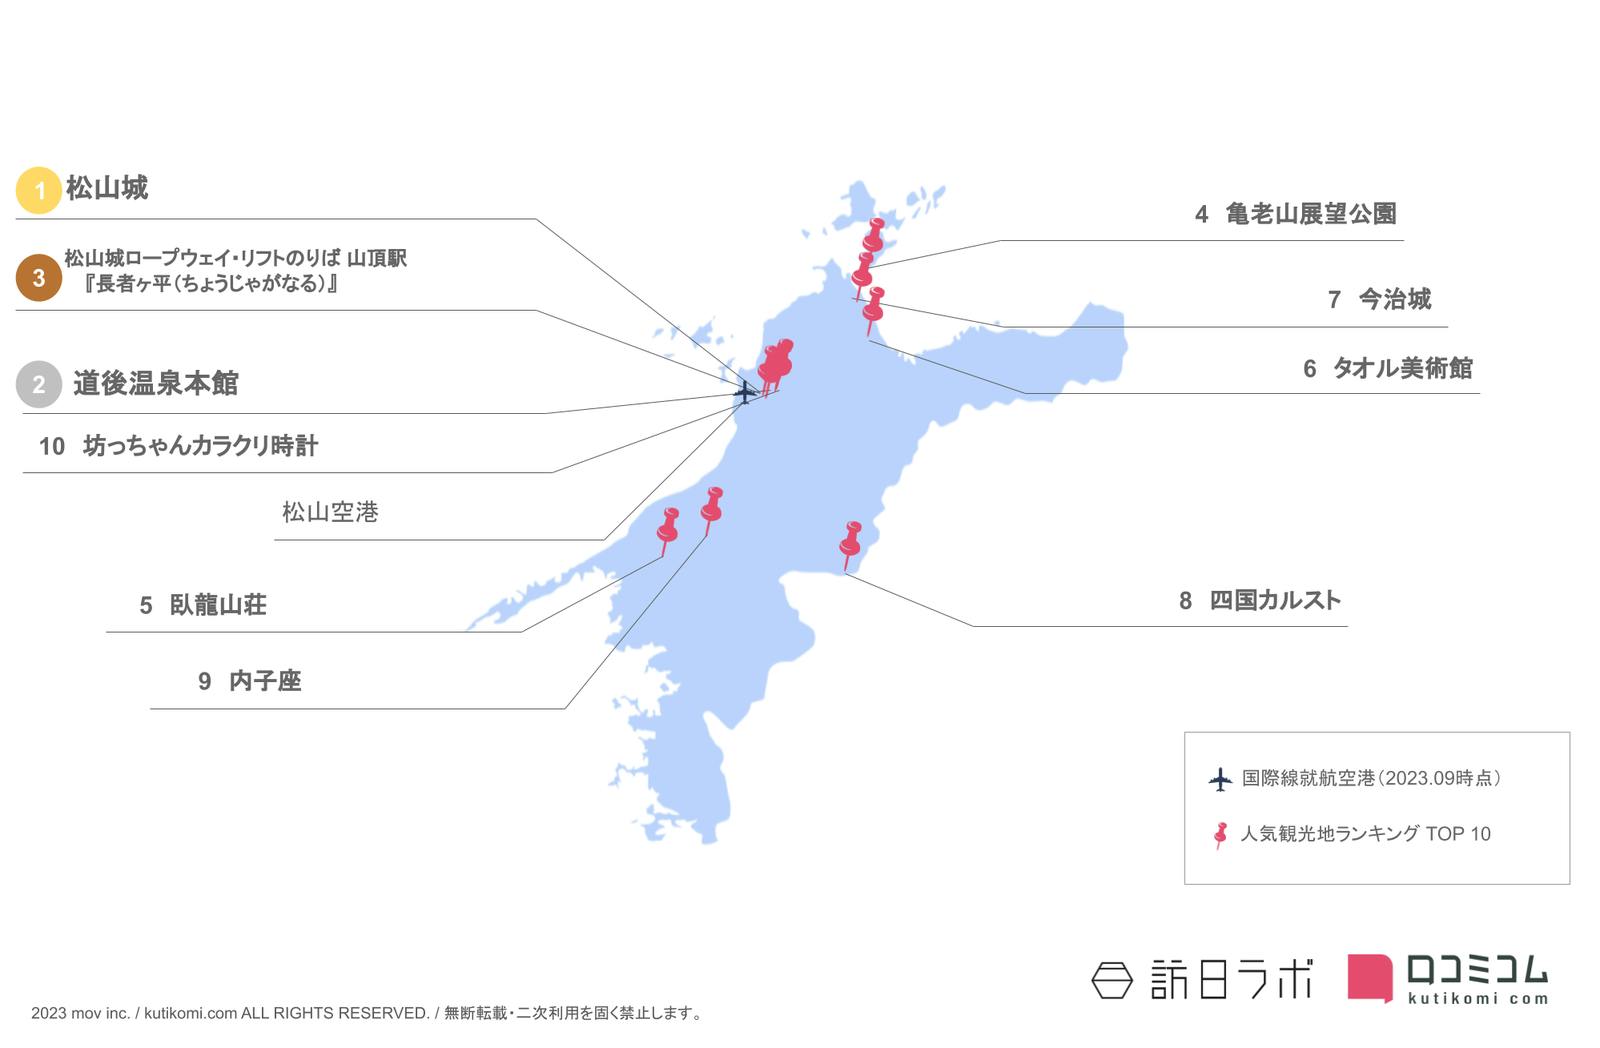 愛媛県インバウンド人気観光スポットランキング